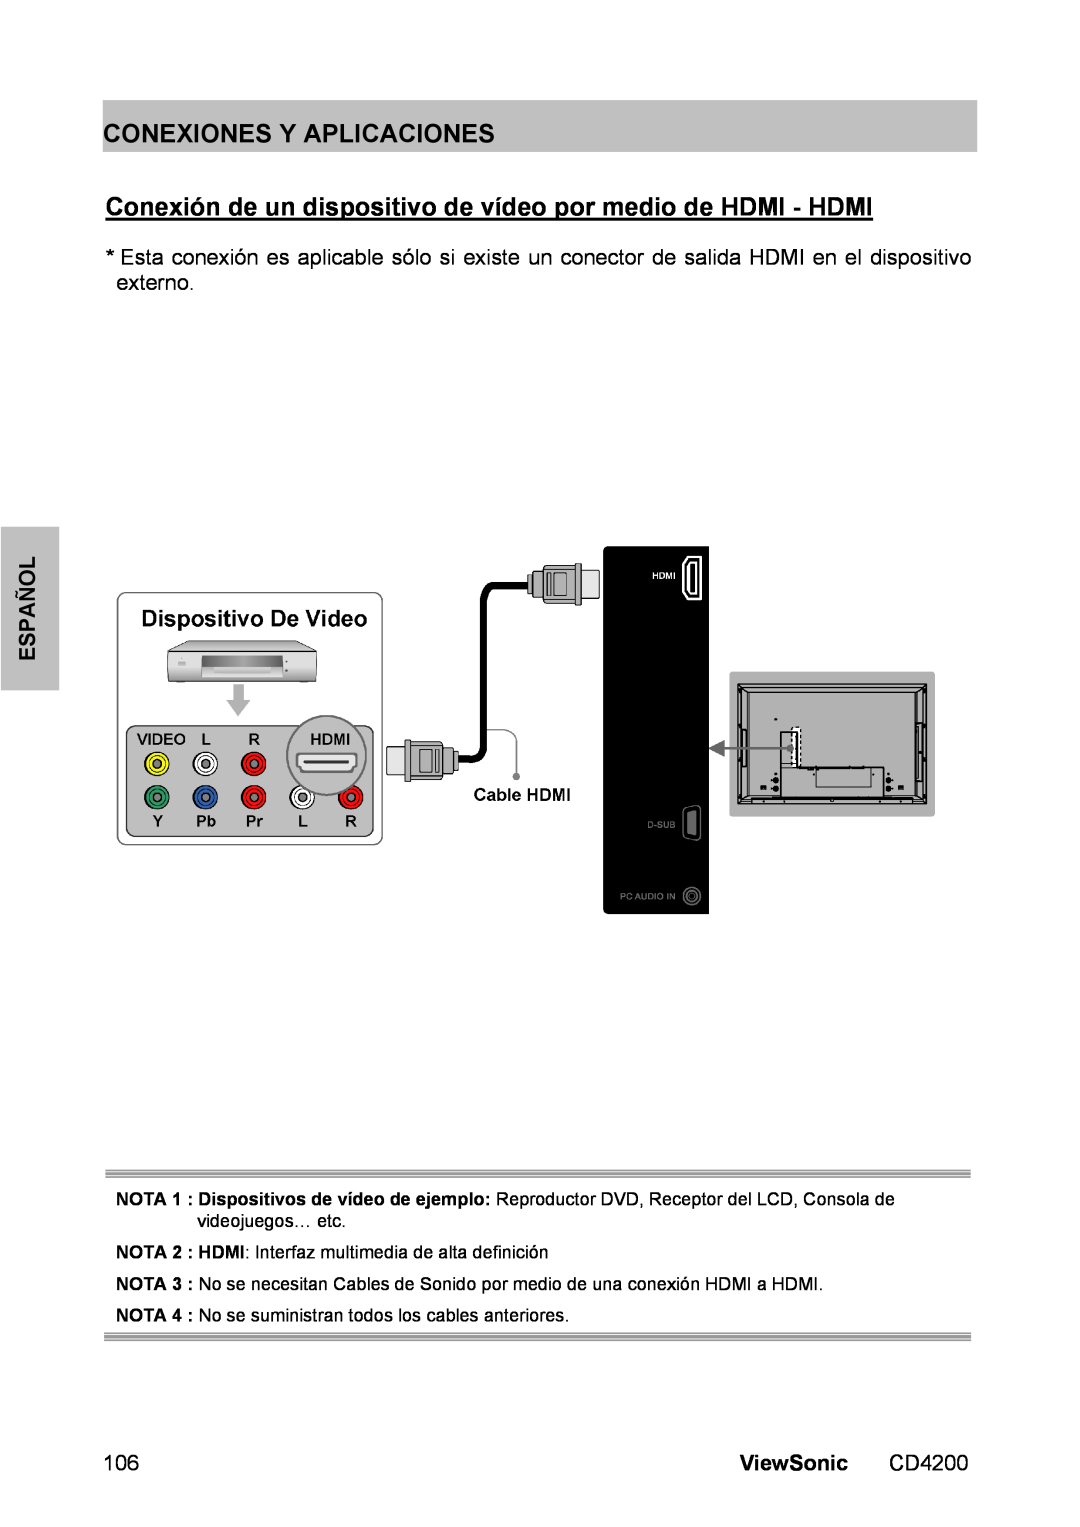 ViewSonic CD4200 manual Conexiones Y Aplicaciones, Conexión de un dispositivo de vídeo por medio de HDMI - HDMI, Español 